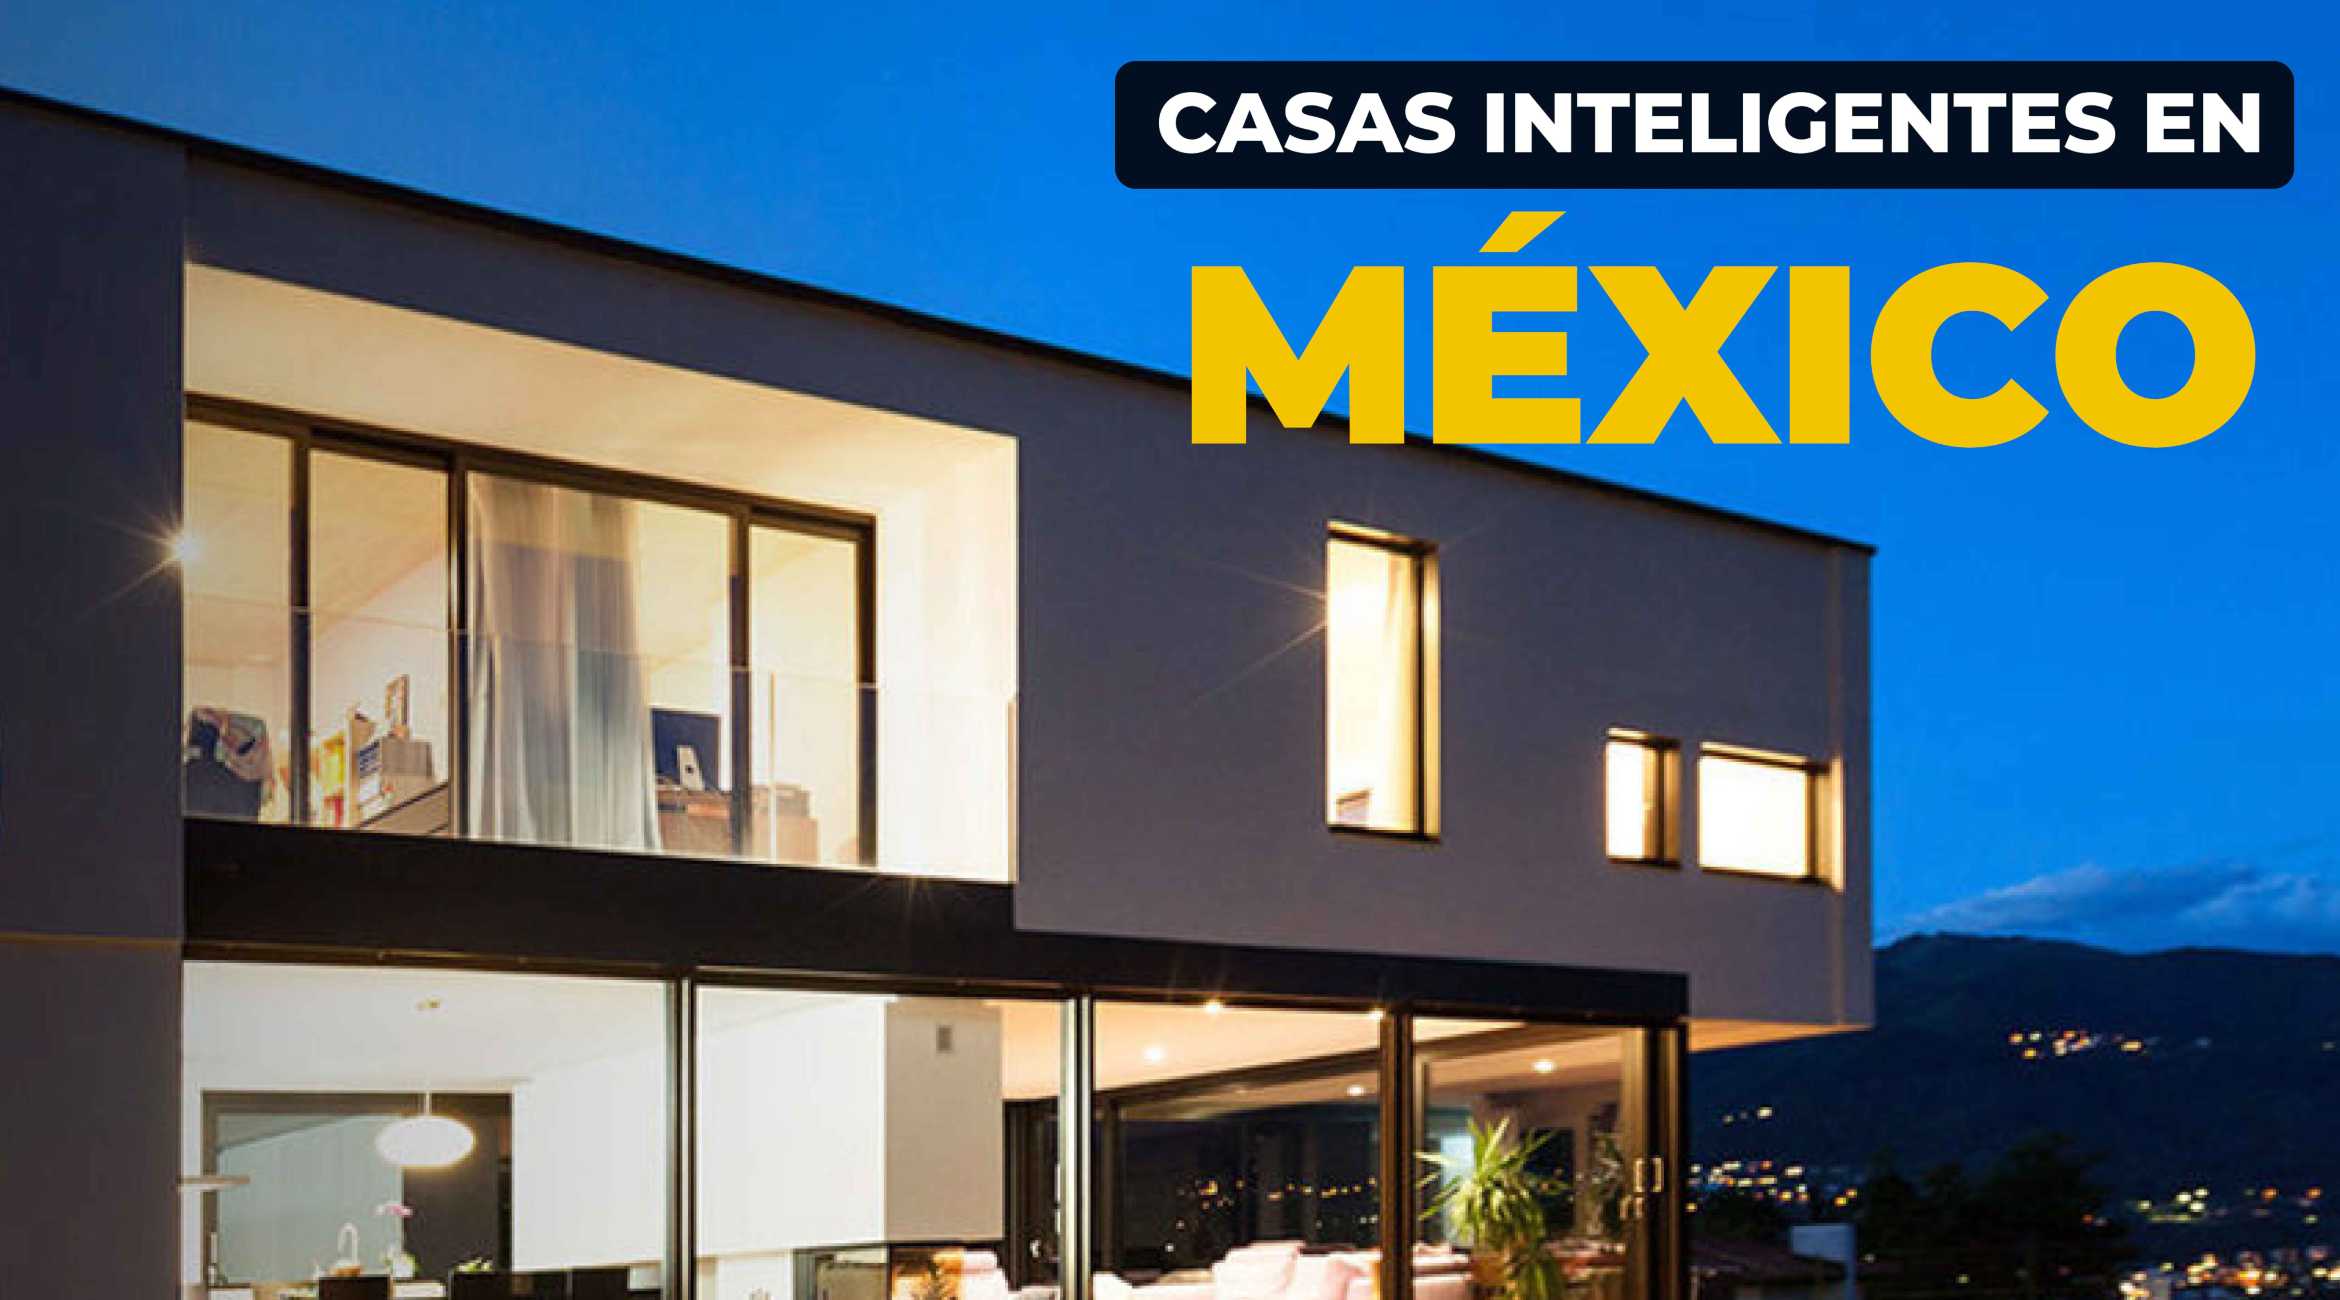 Casas inteligentes en México: Tendencia imparable que deberías conocer